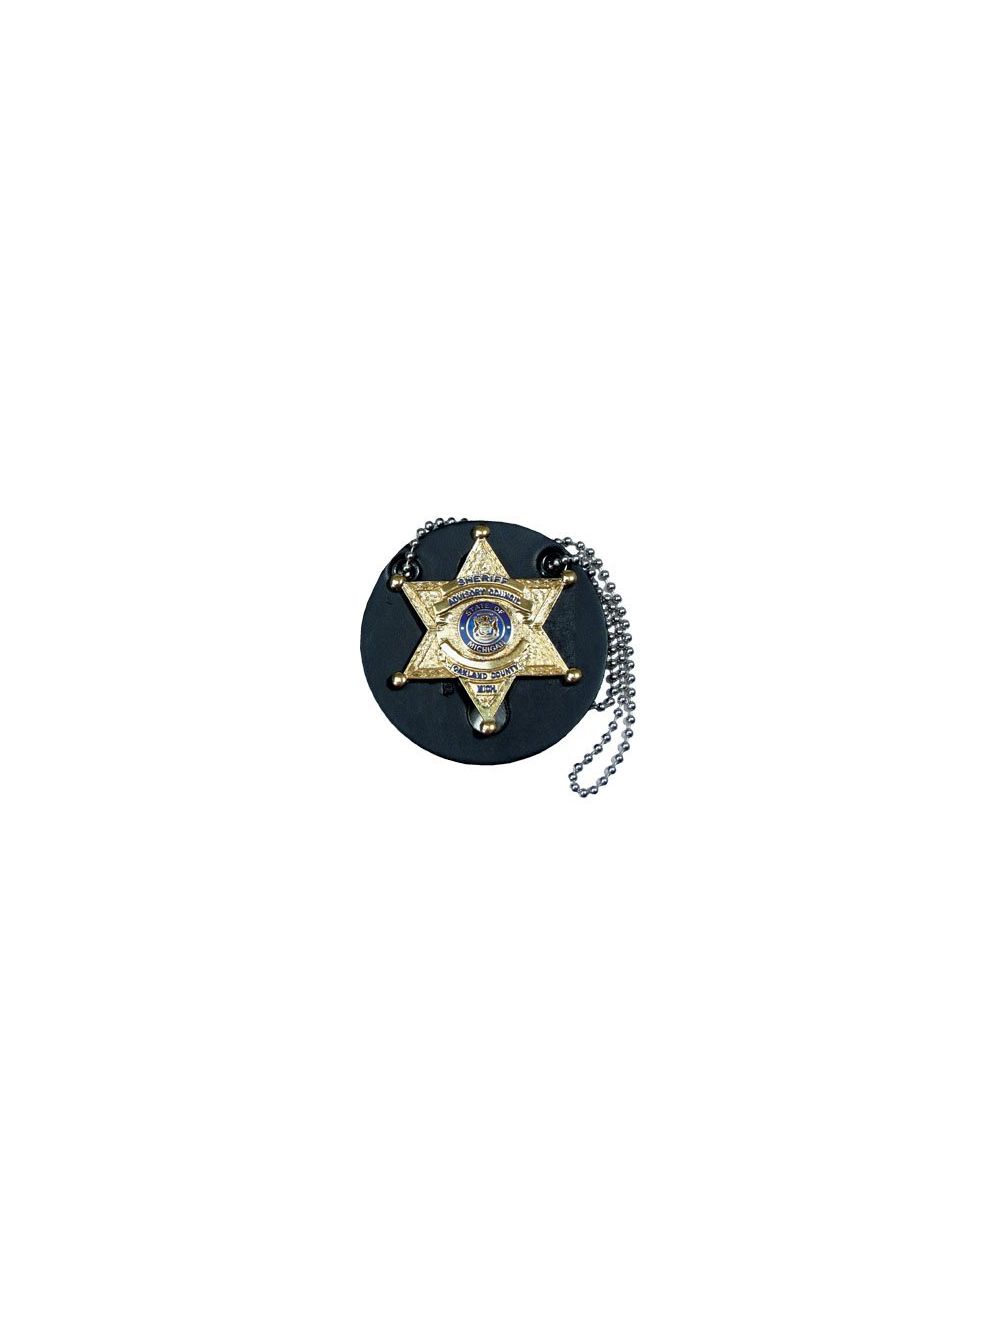 Round Universal Badge Holder w/ Chain